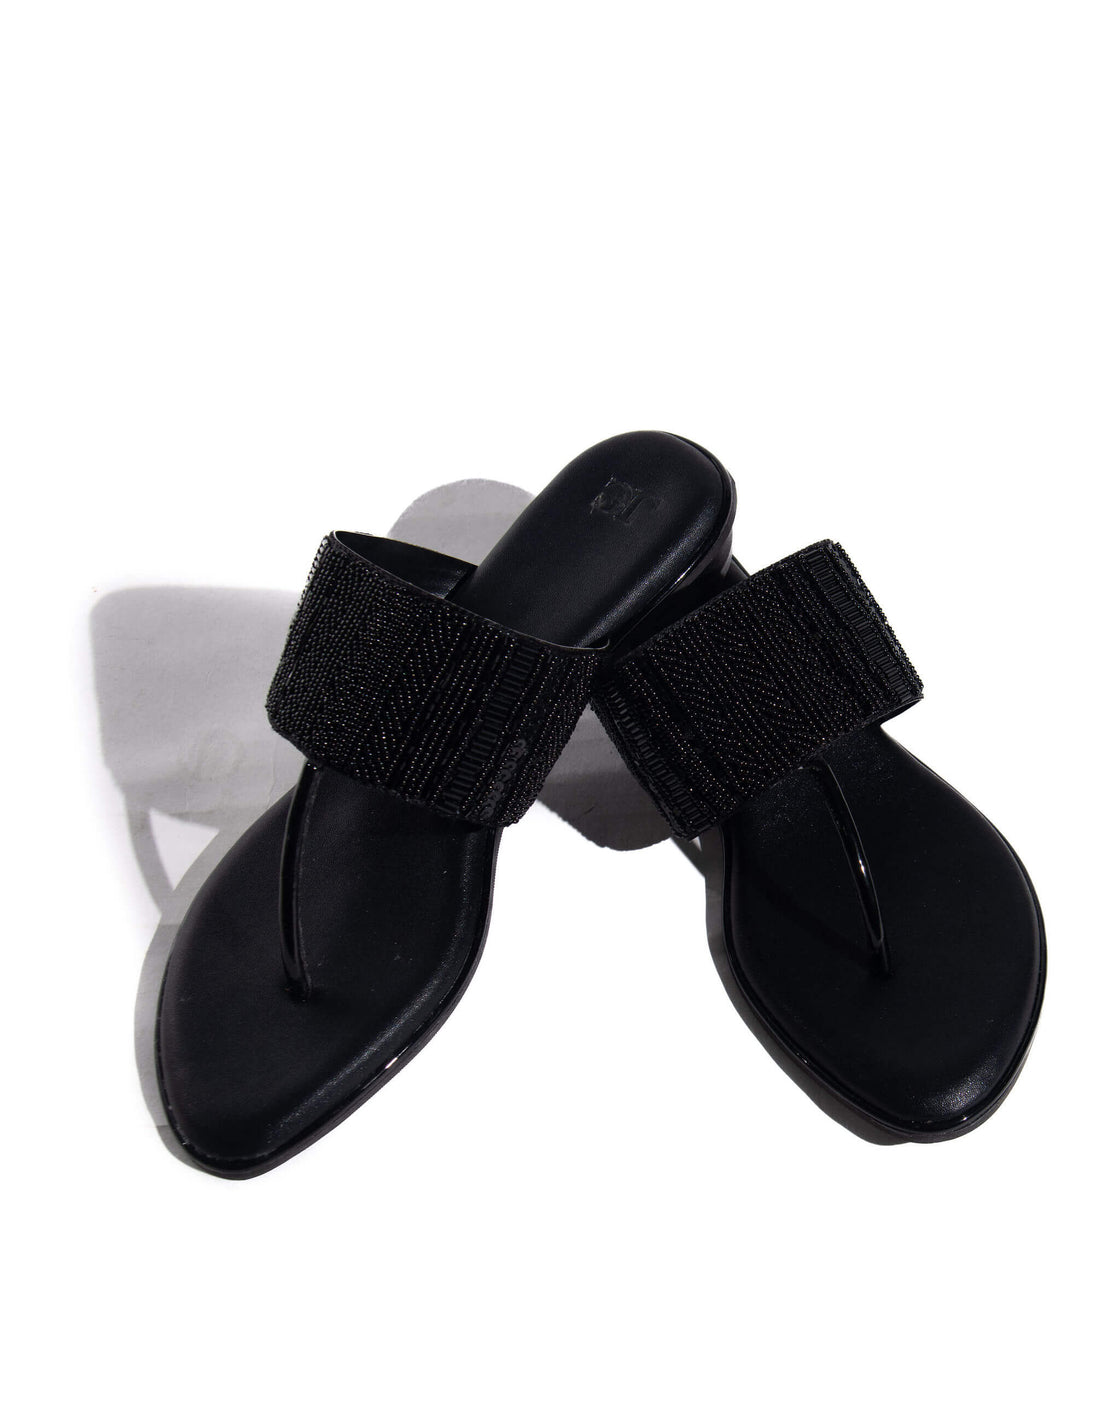 Kyla - Flat sandal - Beaded upper